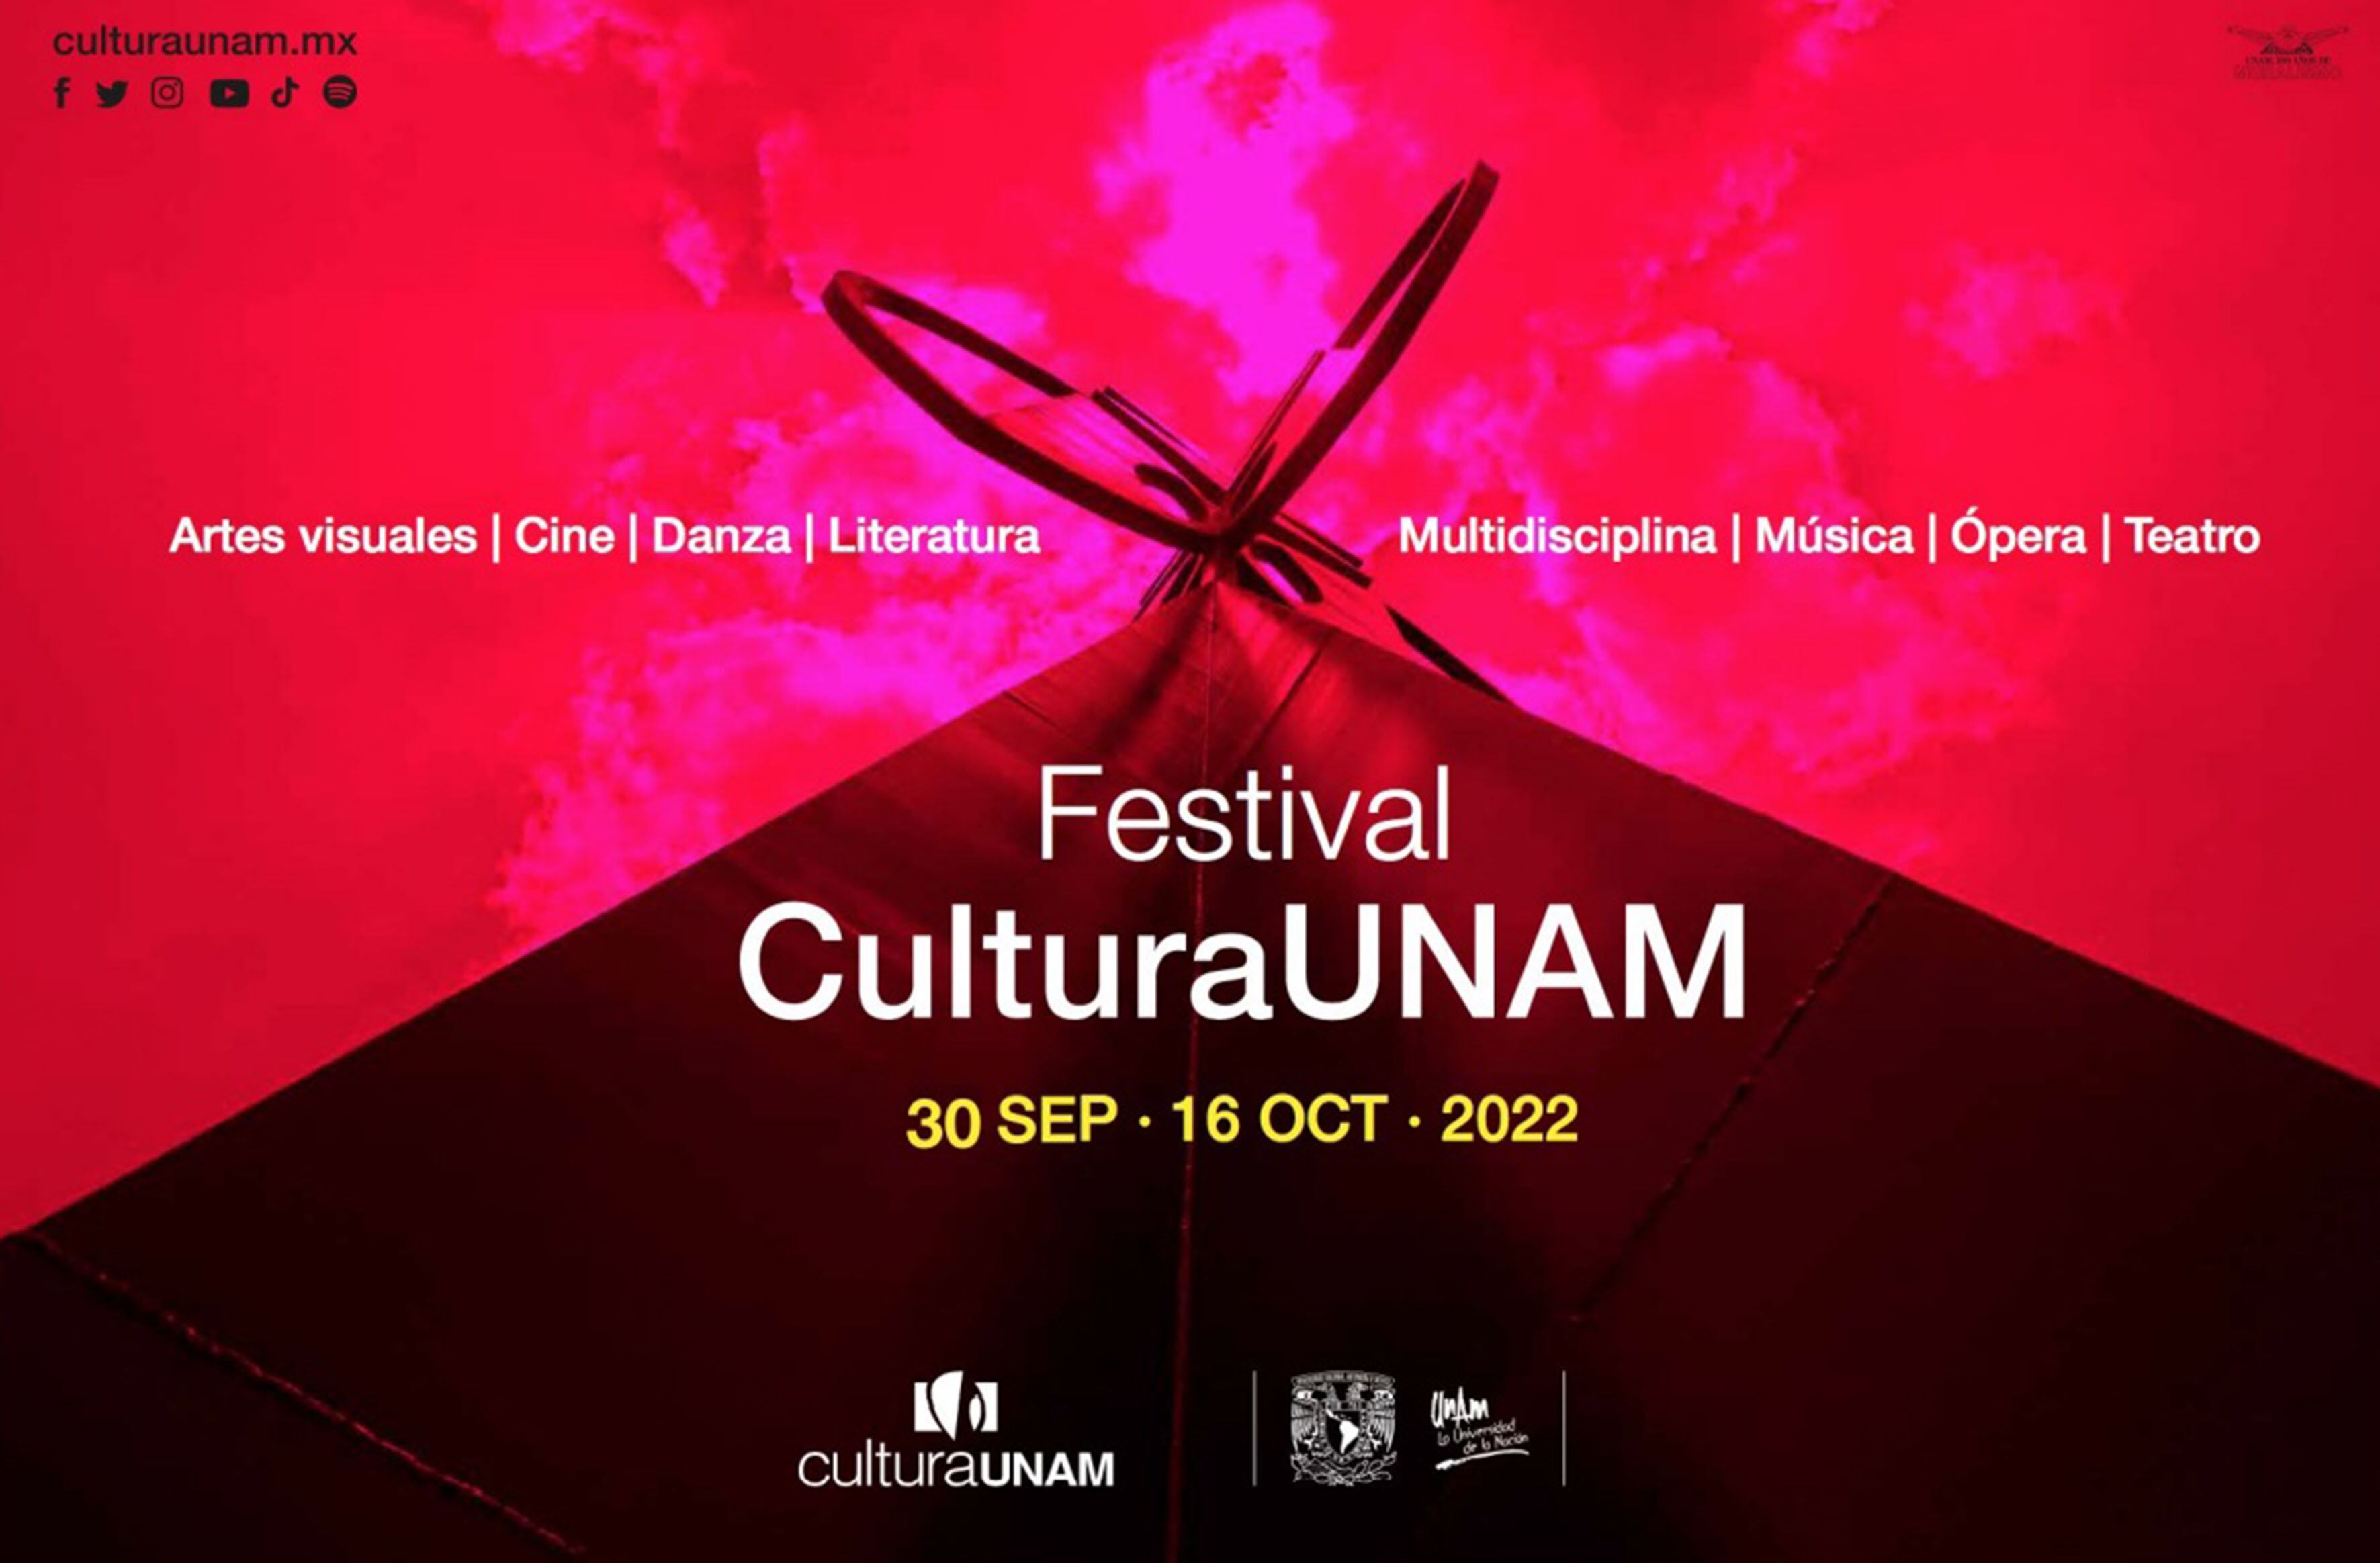 Cartel promocional del festival CulturaUNAM.